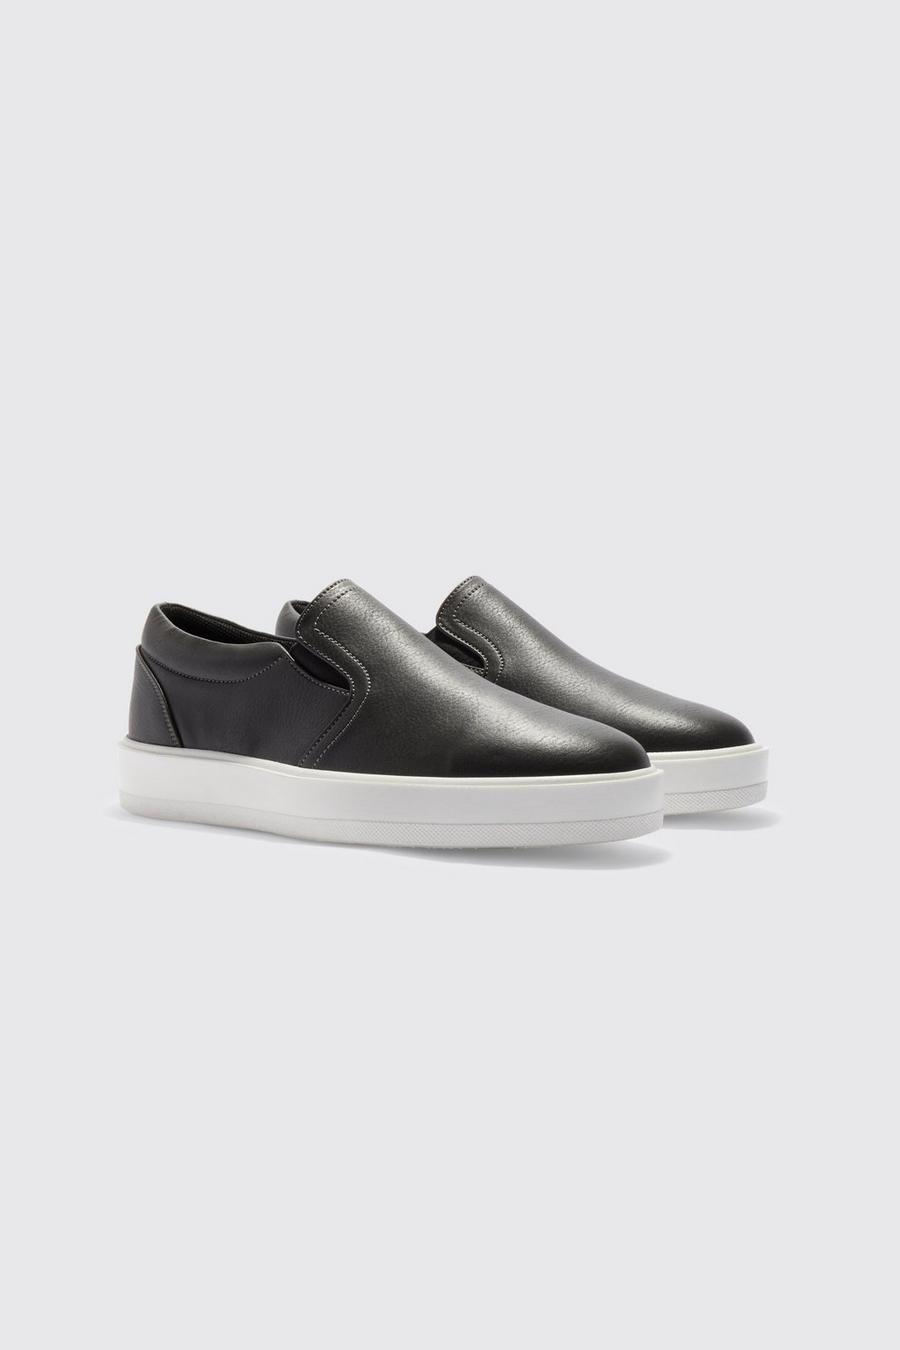 Smarte Kunstleder-Schuhe, Charcoal grey